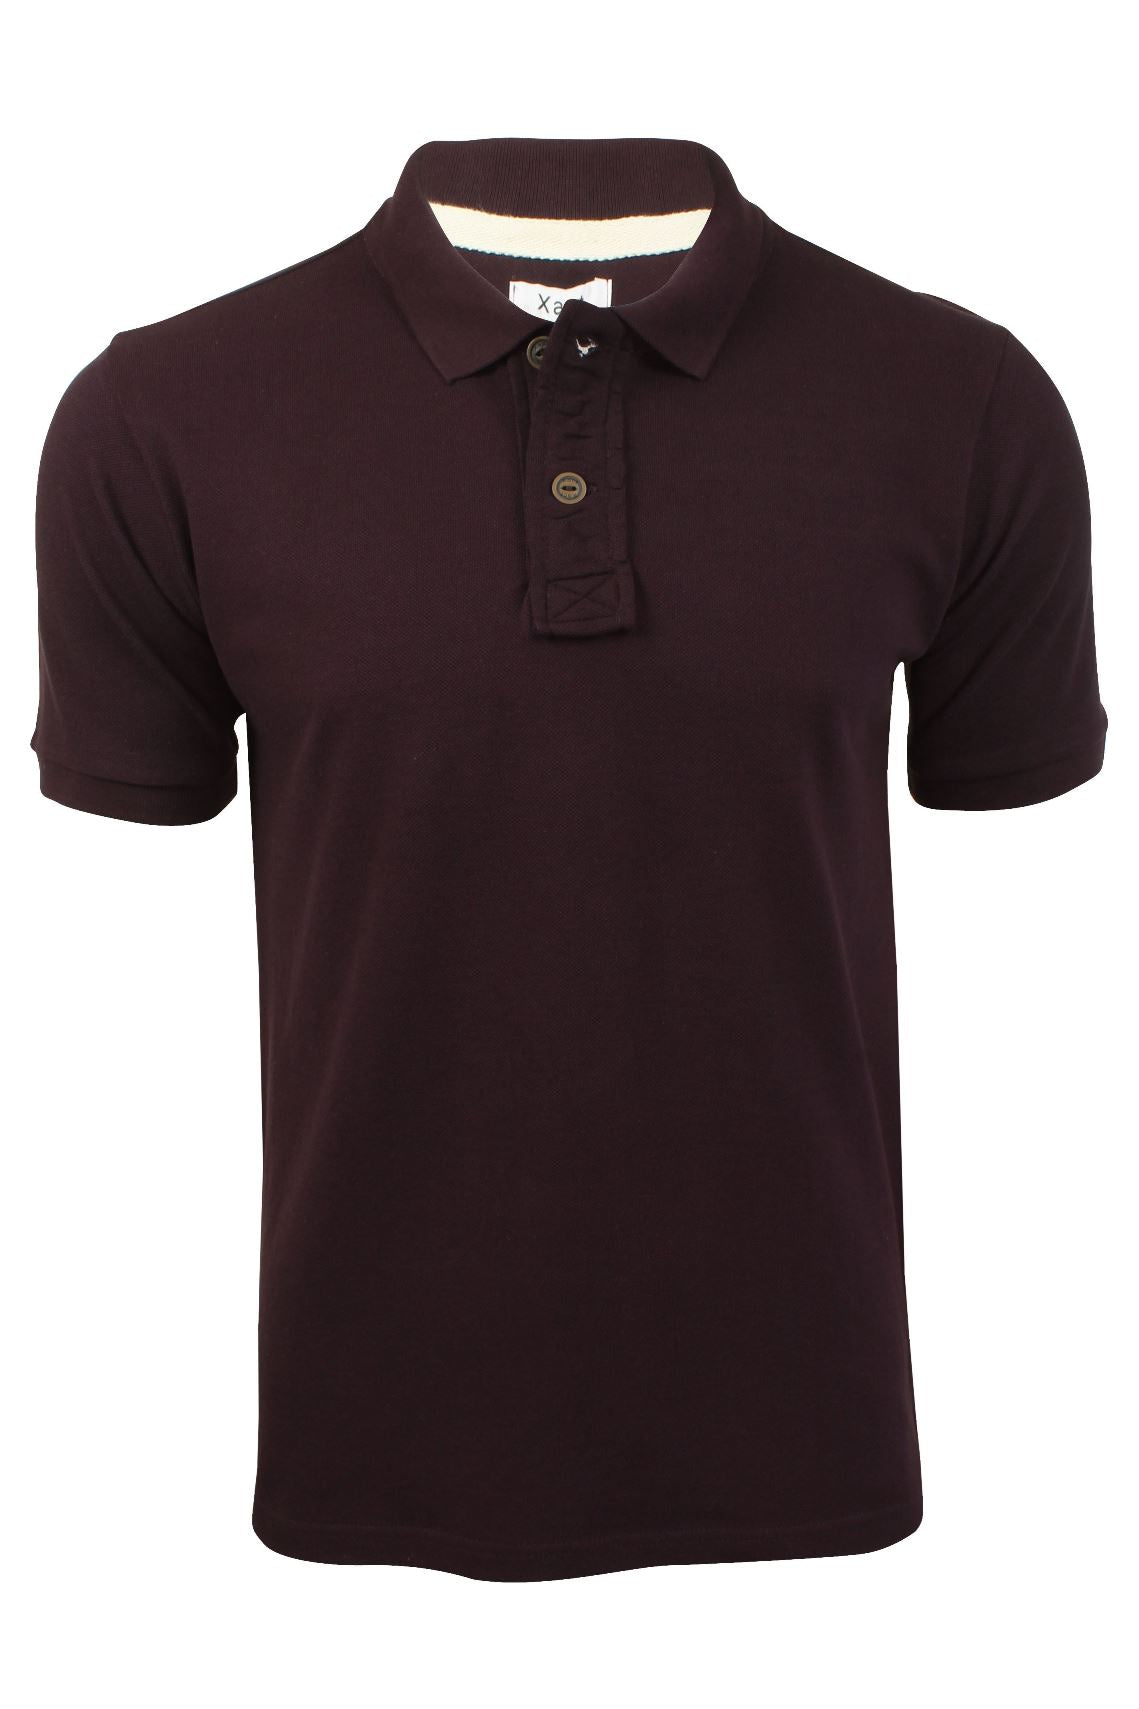 Xact Men's 2 Button Cotton Pique Polo Shirt, Short Sleeved-Main Image